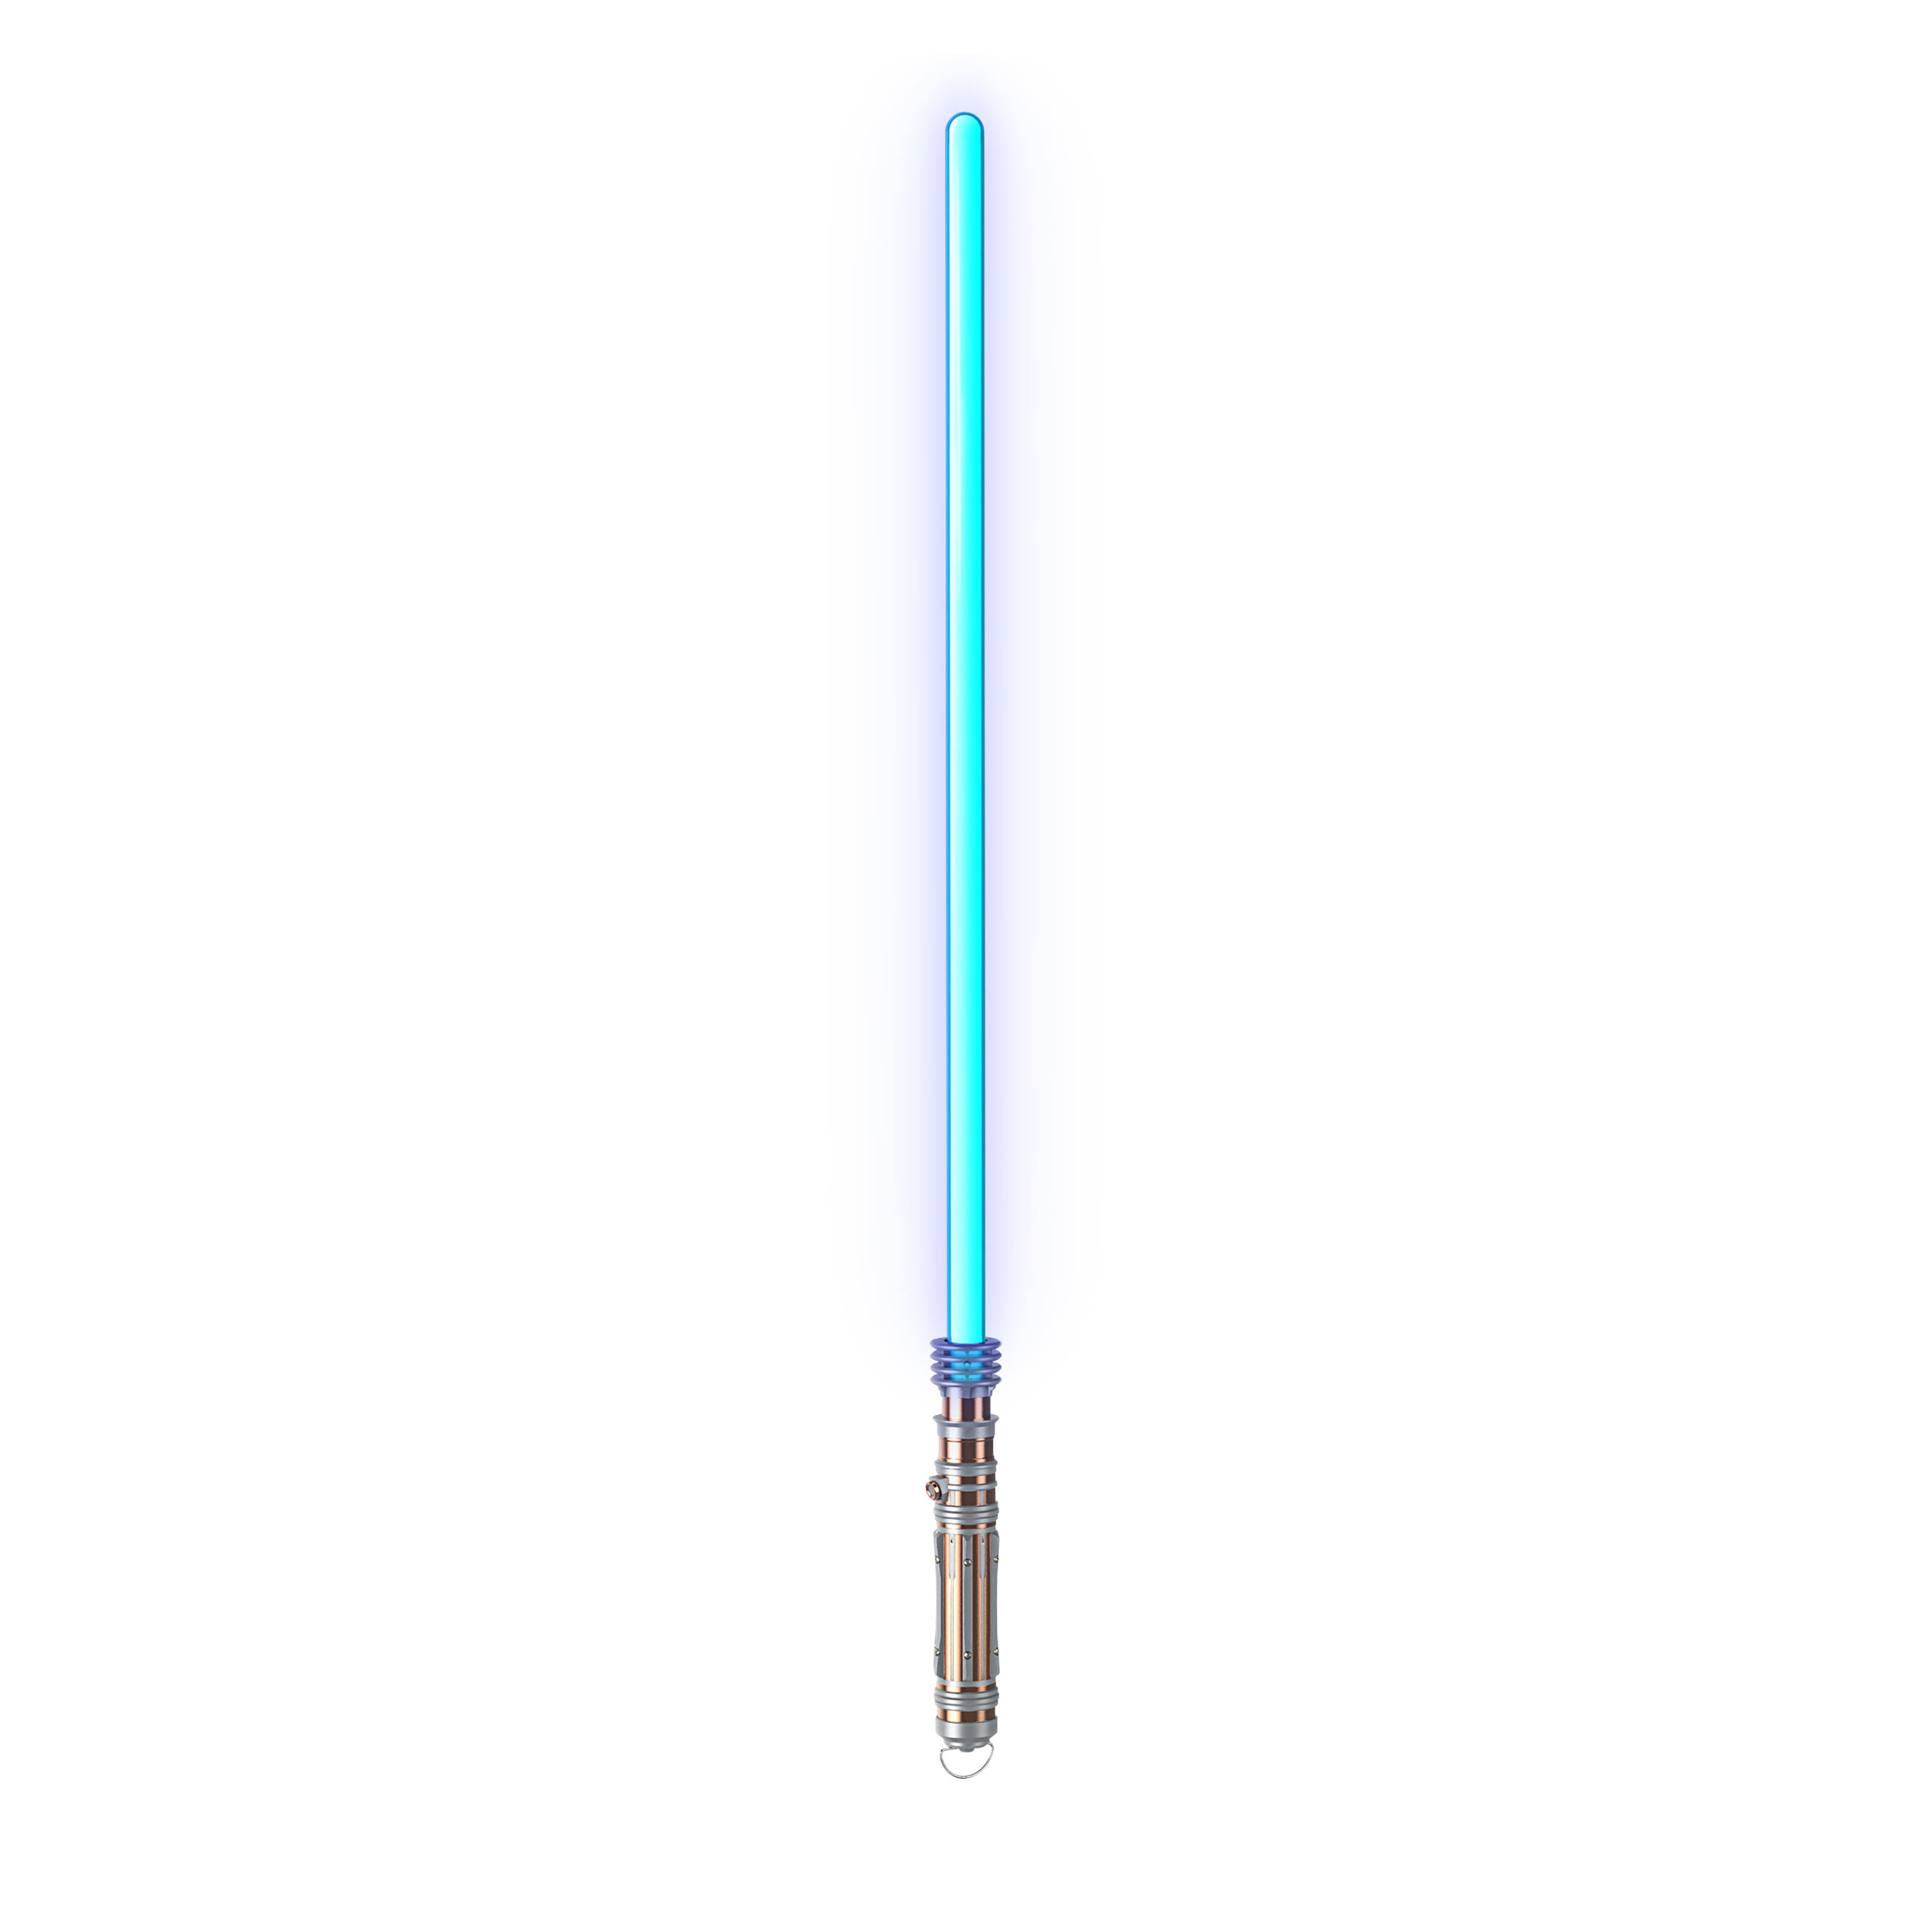 Star Wars - Leia Organa Force FX Elite Lichtschwert